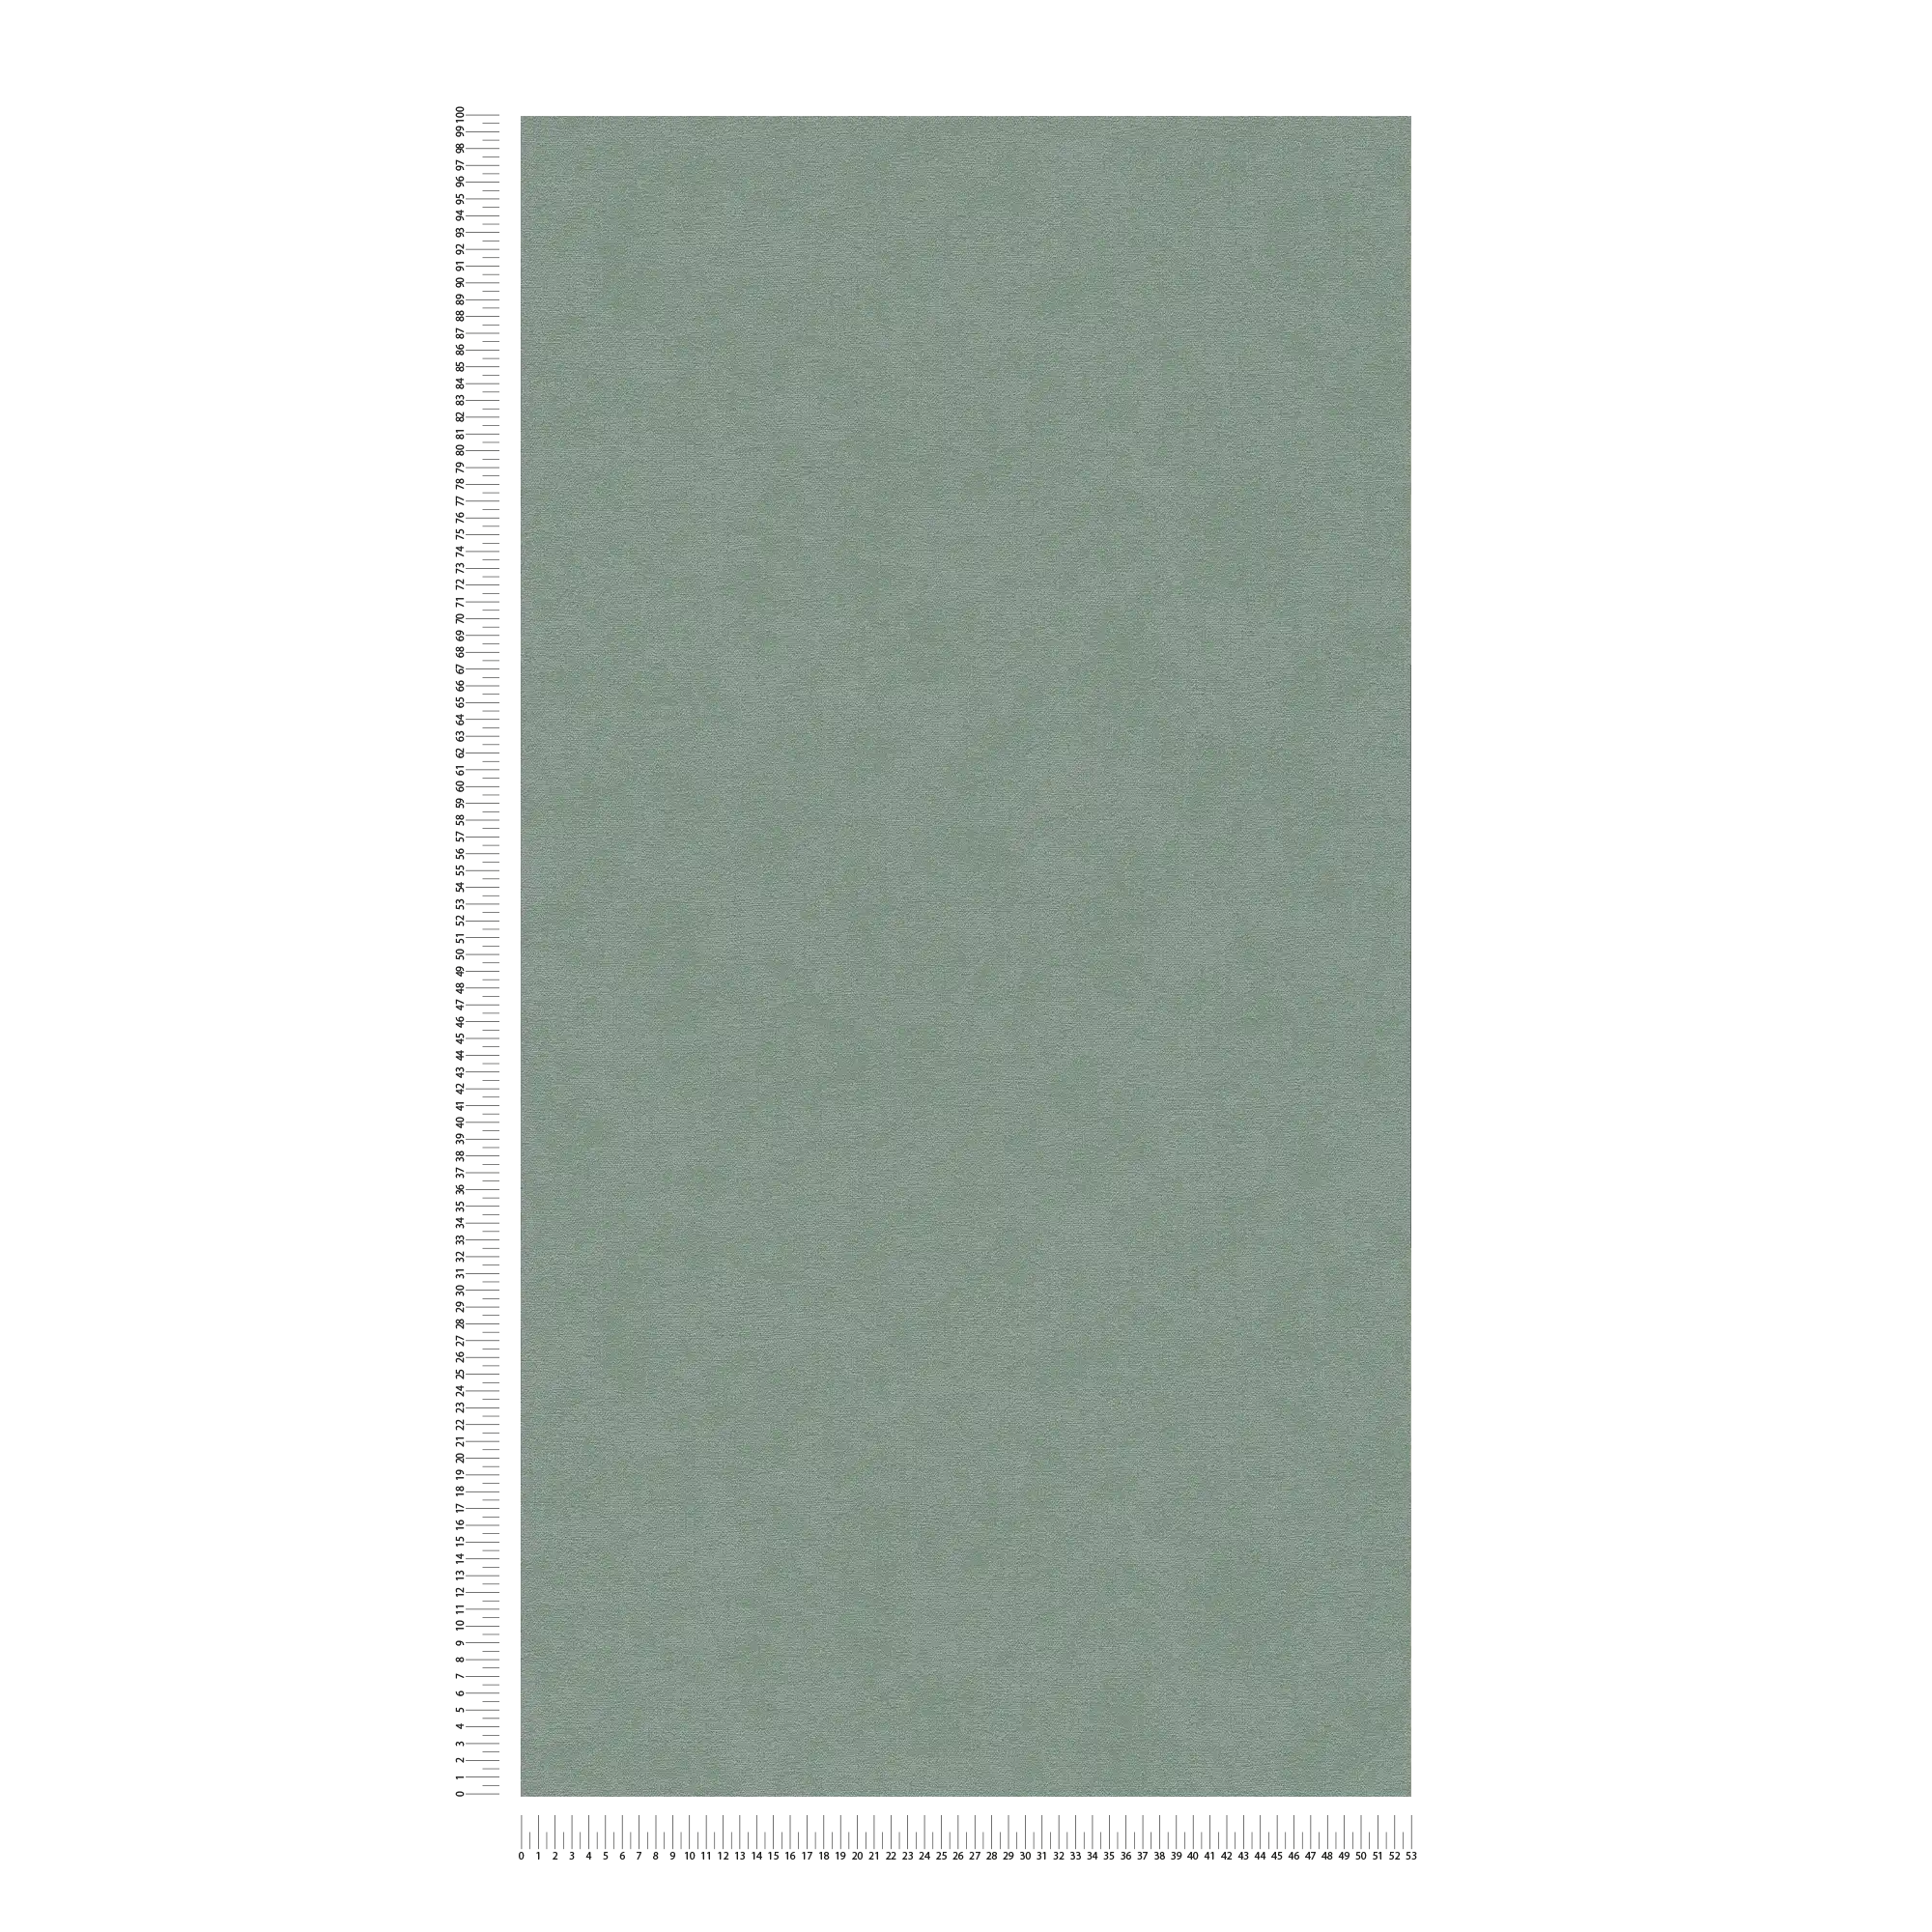             Effen vliesbehang met een zachte textuur - Groen
        